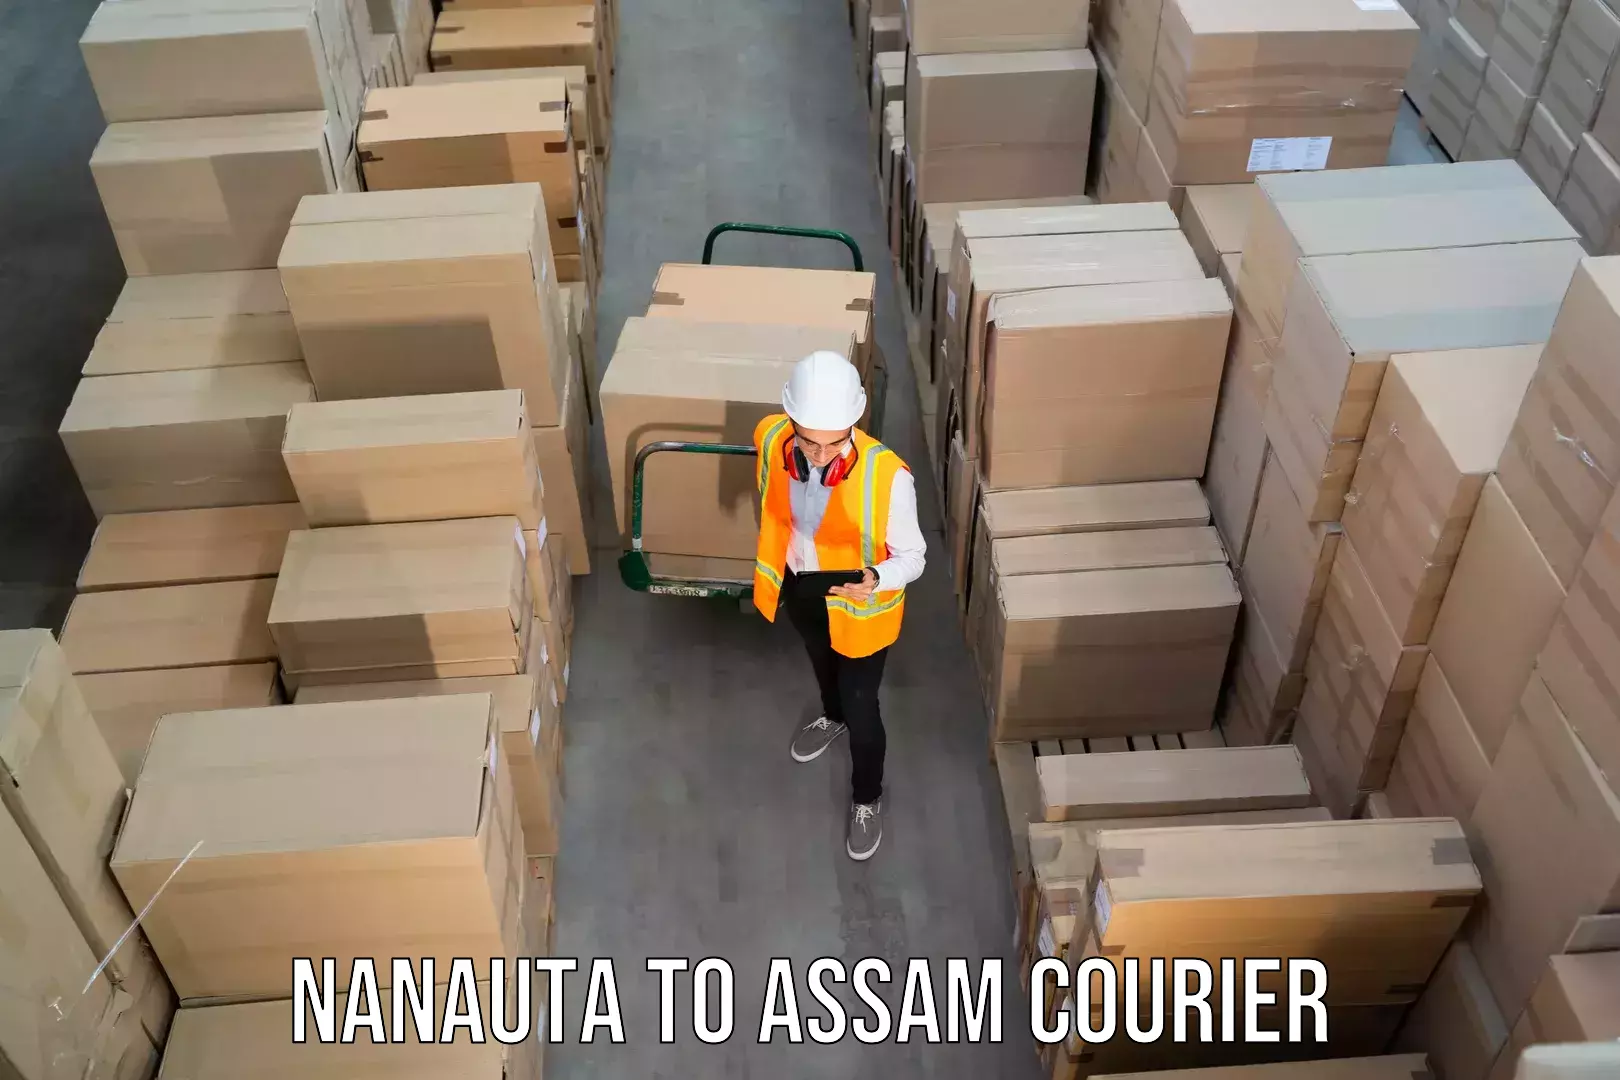 Courier app Nanauta to Sivasagar